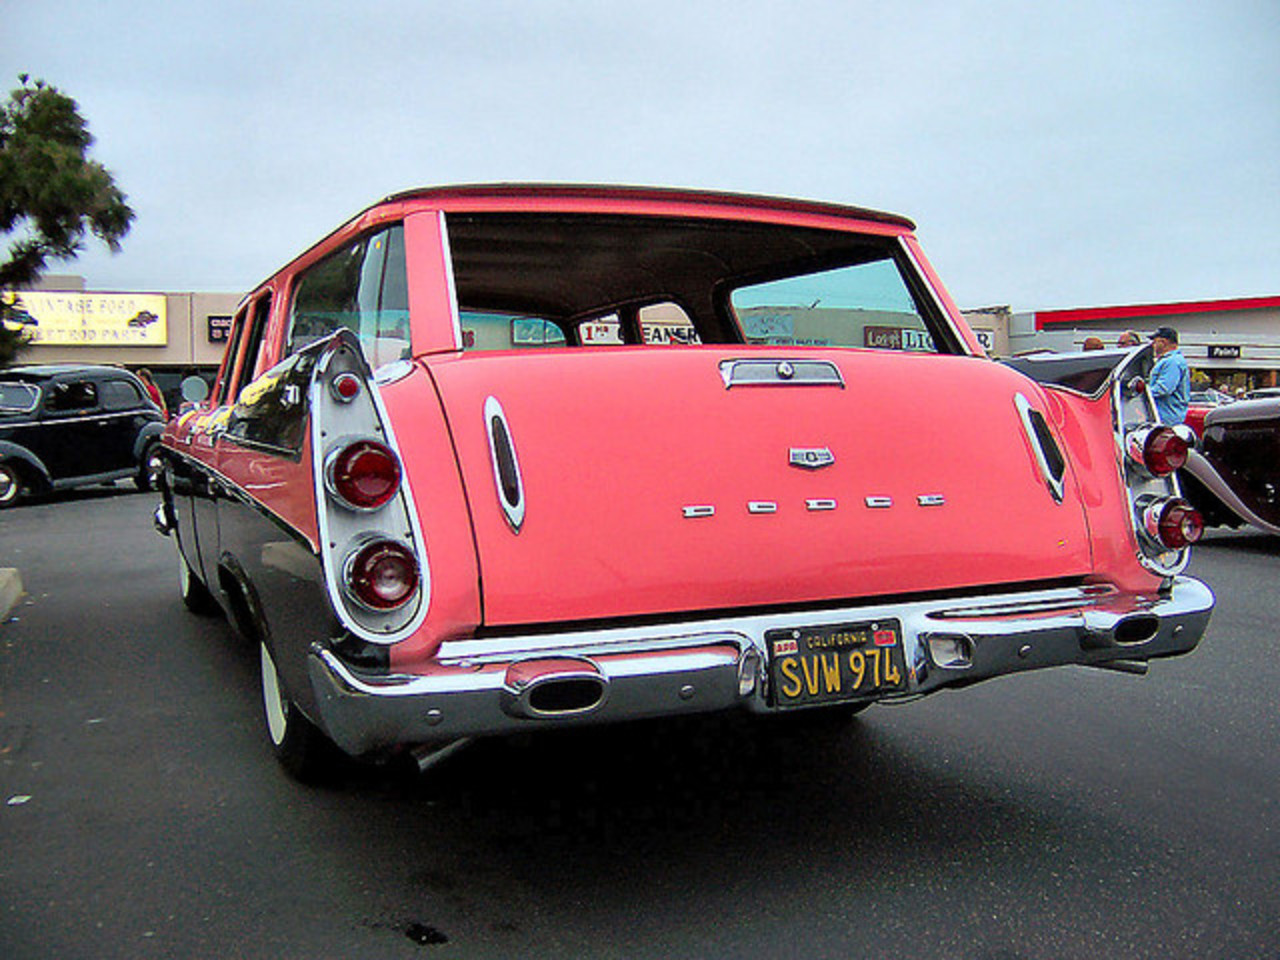 Quart arrière Dodge Sierra Wagon 1957 / Flickr - Partage de photos!